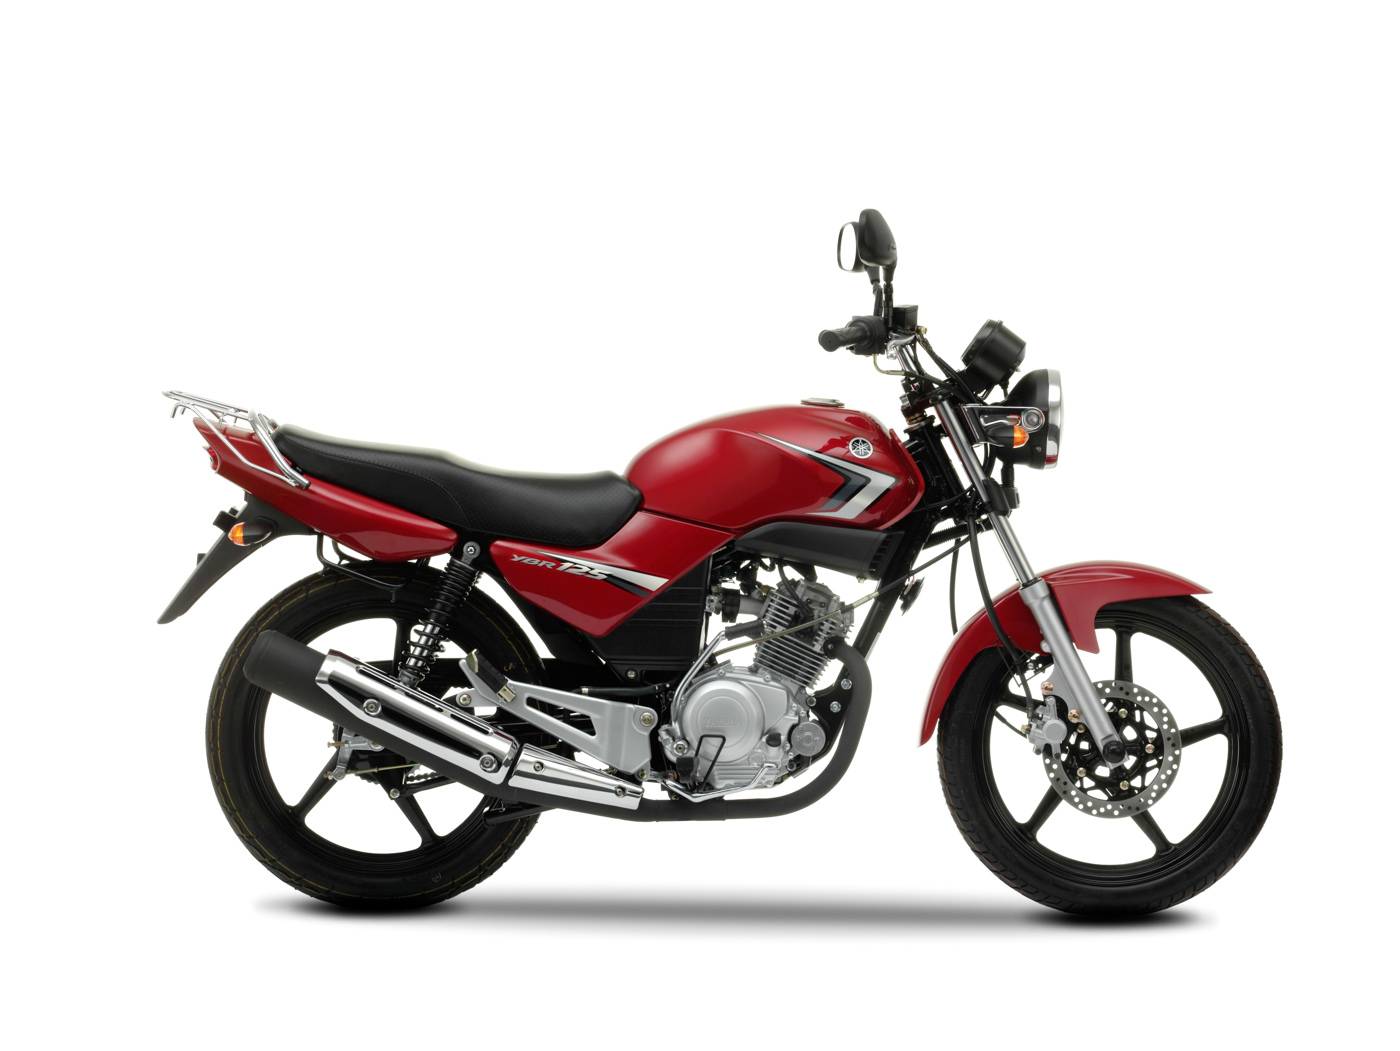 Мотоцикл yamaha ybr 125: обзор, технические характеристики (максимальная скорость, расход топлива, вес).